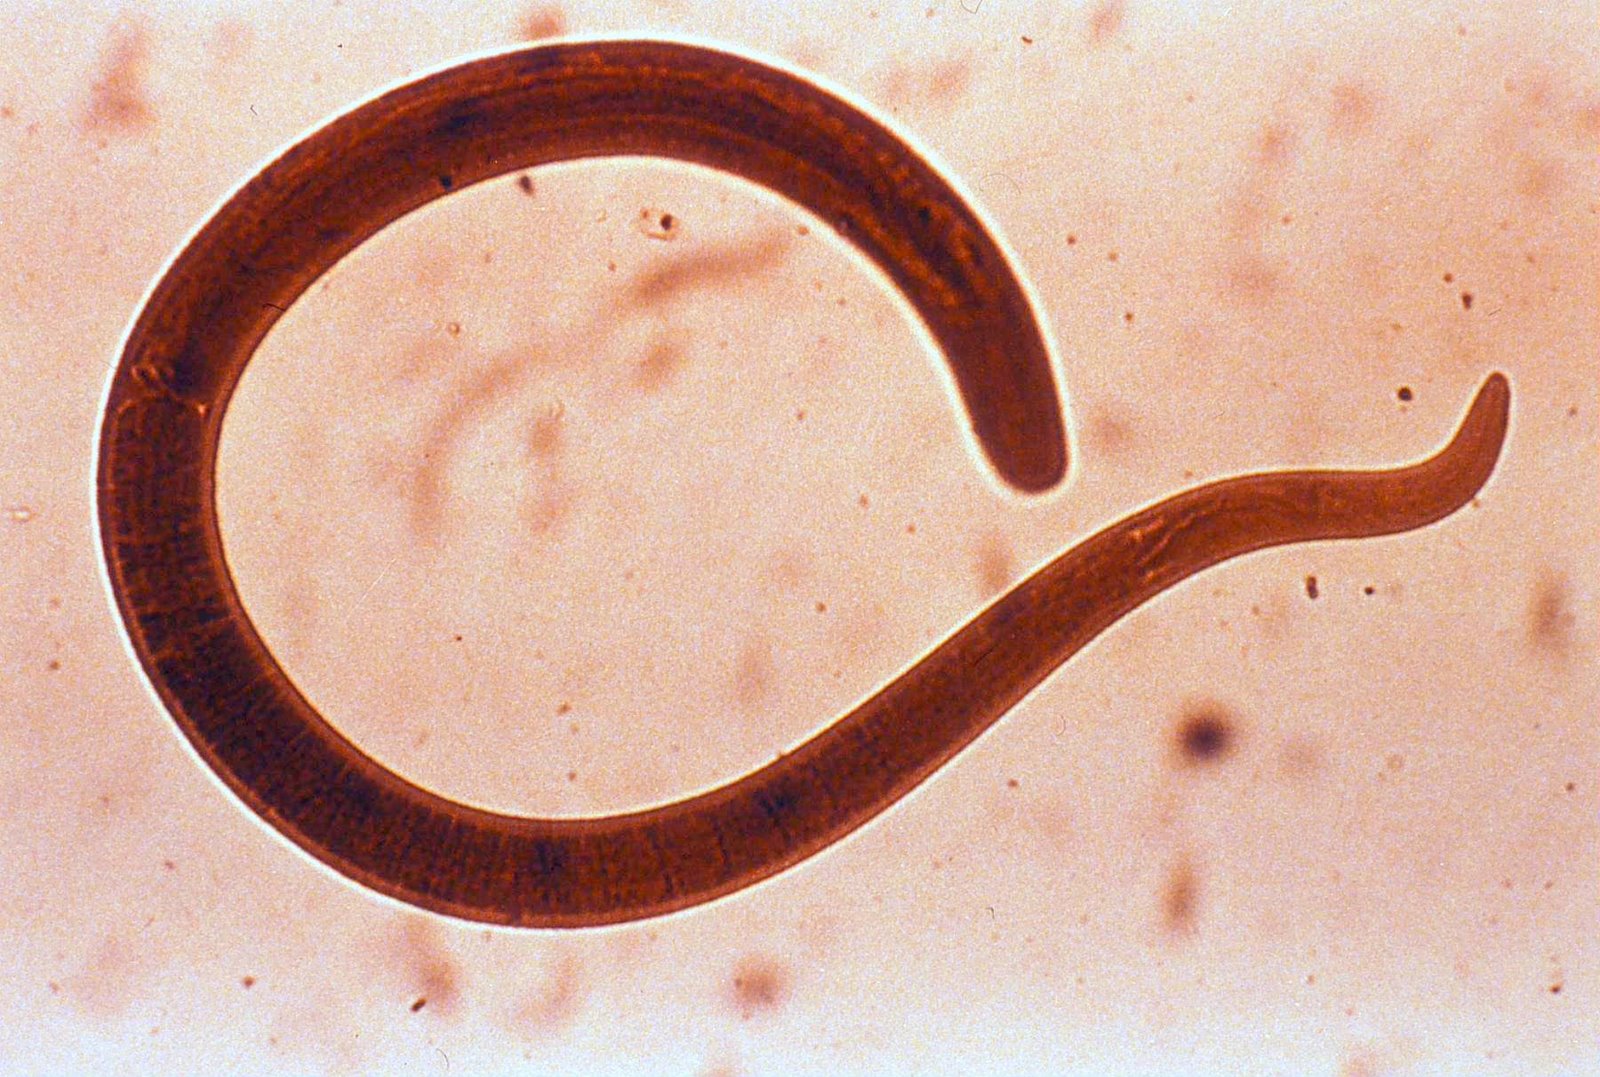 Tapeworms: Mga hinungdan sa impeksyon ug mga pamaagi sa pagtambal - Edukar ang imong kaugalingon